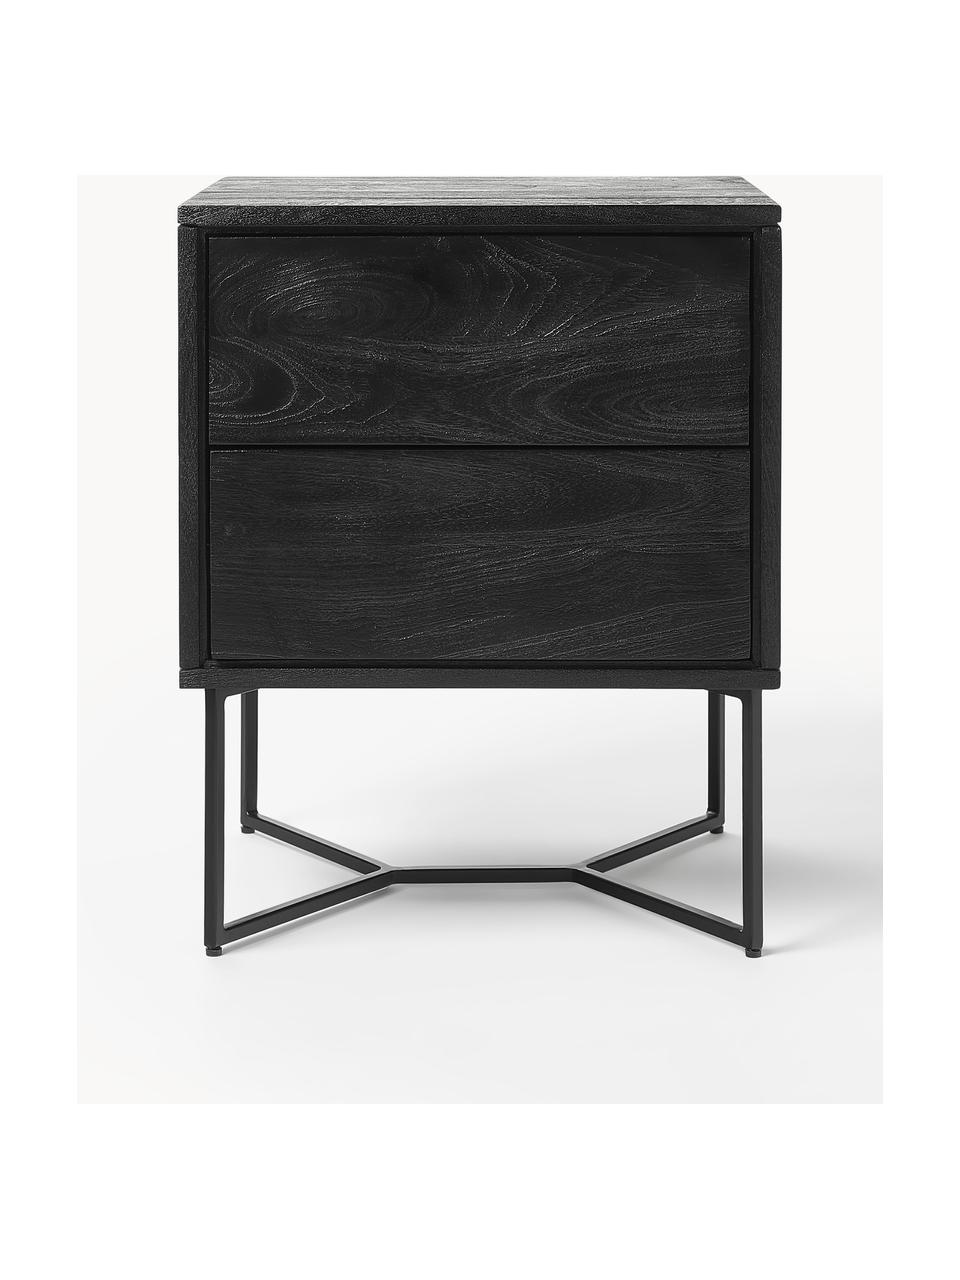 Noční stolek z mangového dřeva Luca, Mangové dřevo černě lakované, černá, Š 45 cm, V 57 cm